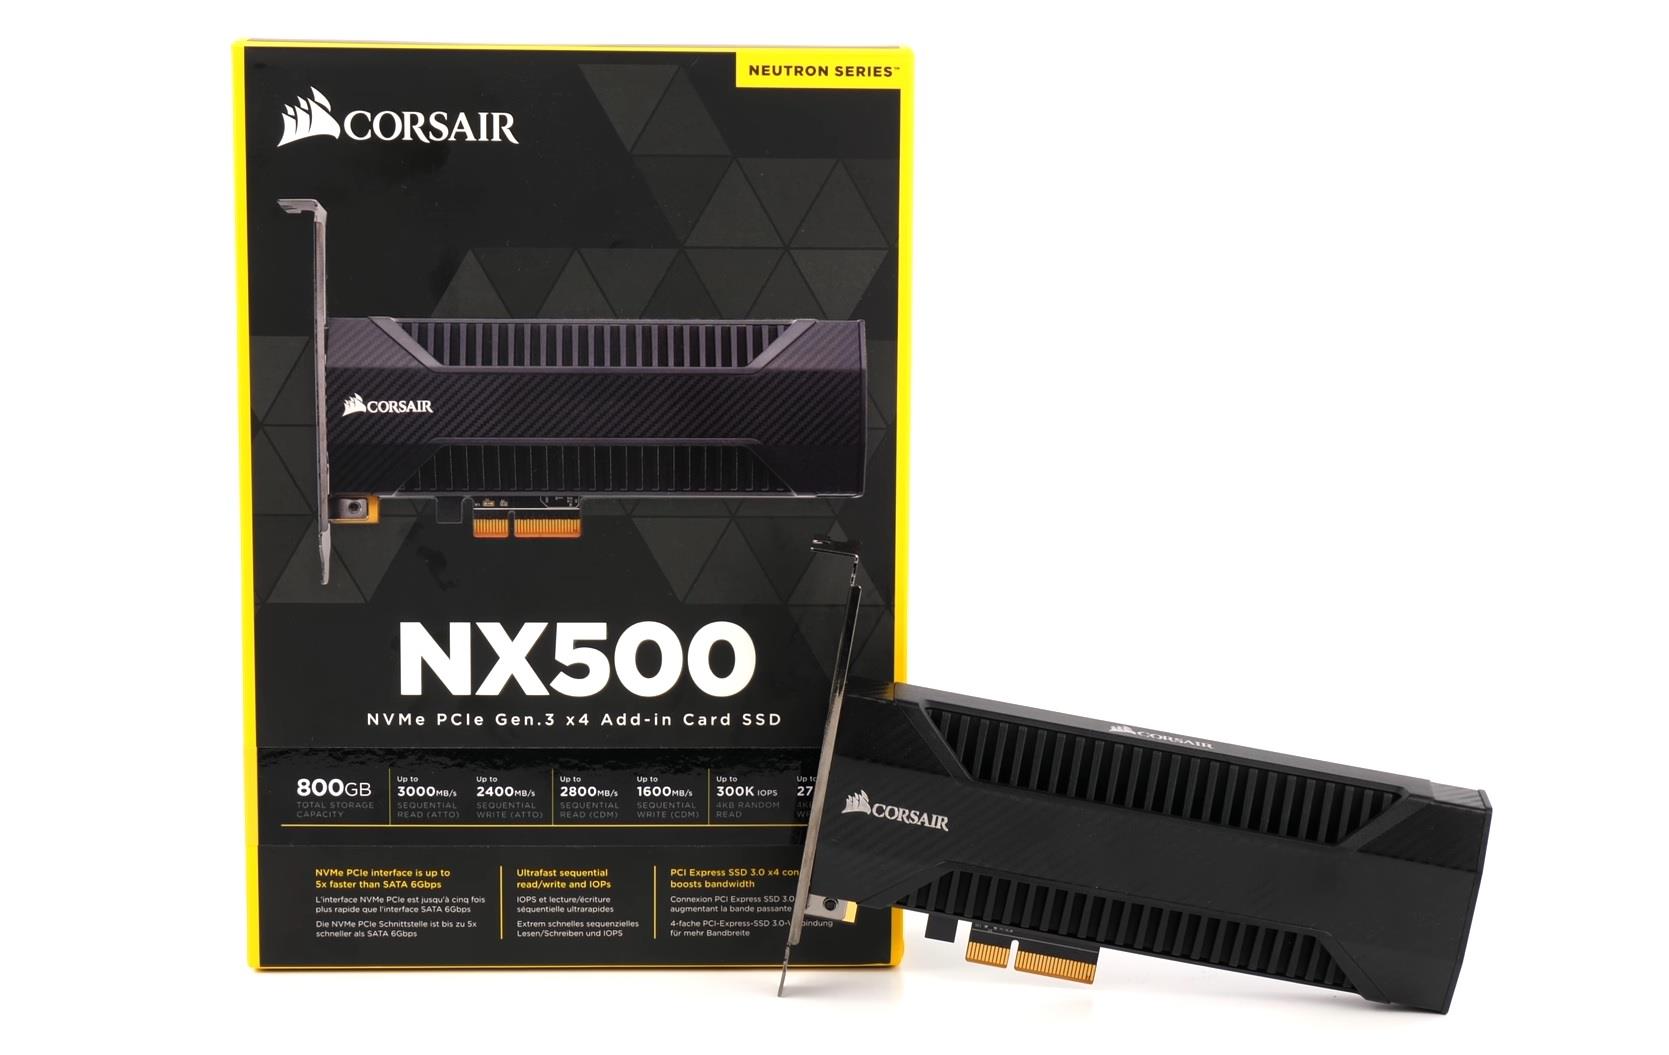 CORSAIR NEUTRON NX500 NVMe PCIe AIC SSD Review